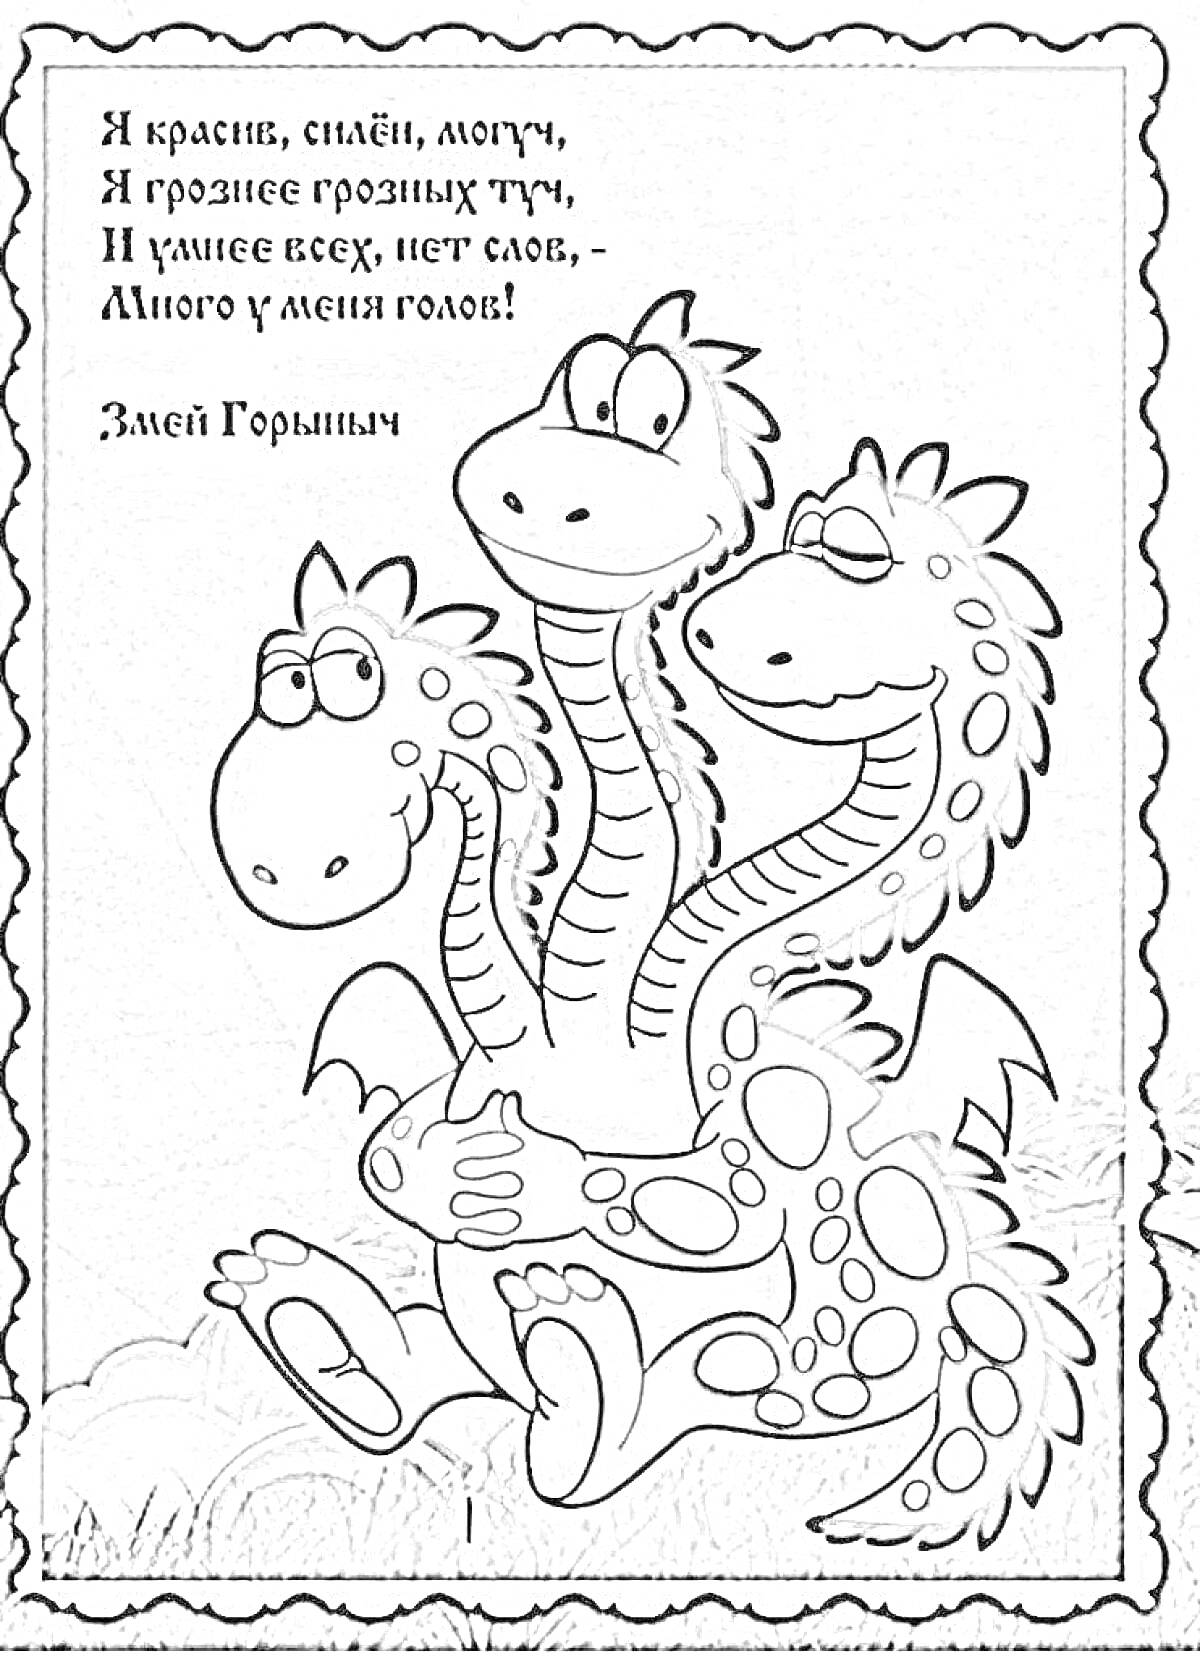 Змей Горыныч с тремя головами и стихотворение-загадка